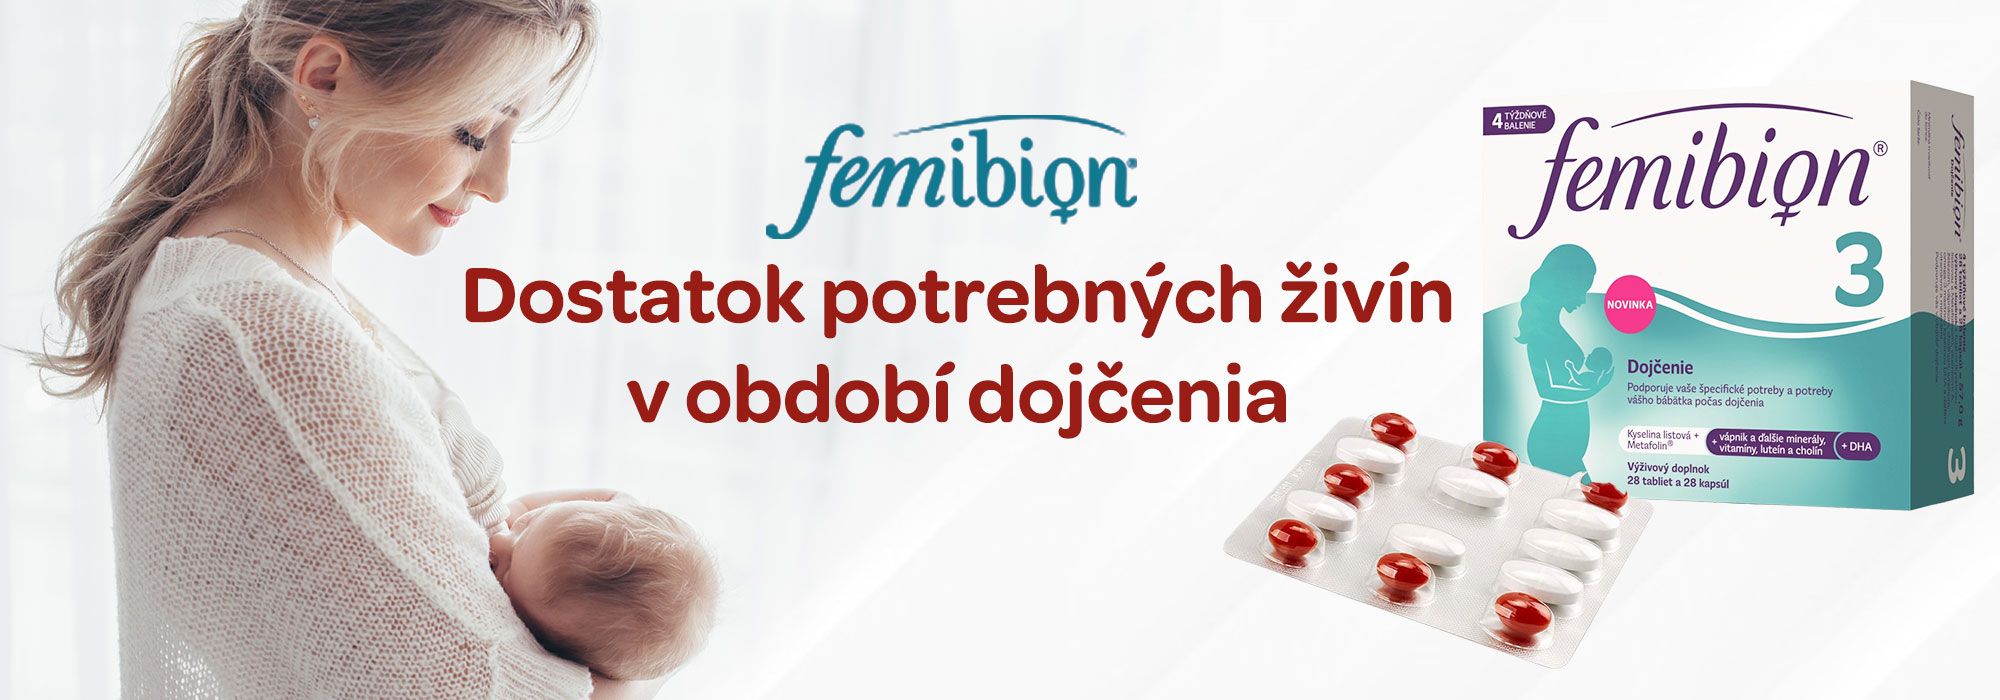 Femibion 3, doplněk stravy, období kojení, DHA, kyselina listová, vitamin A, železo, vápník